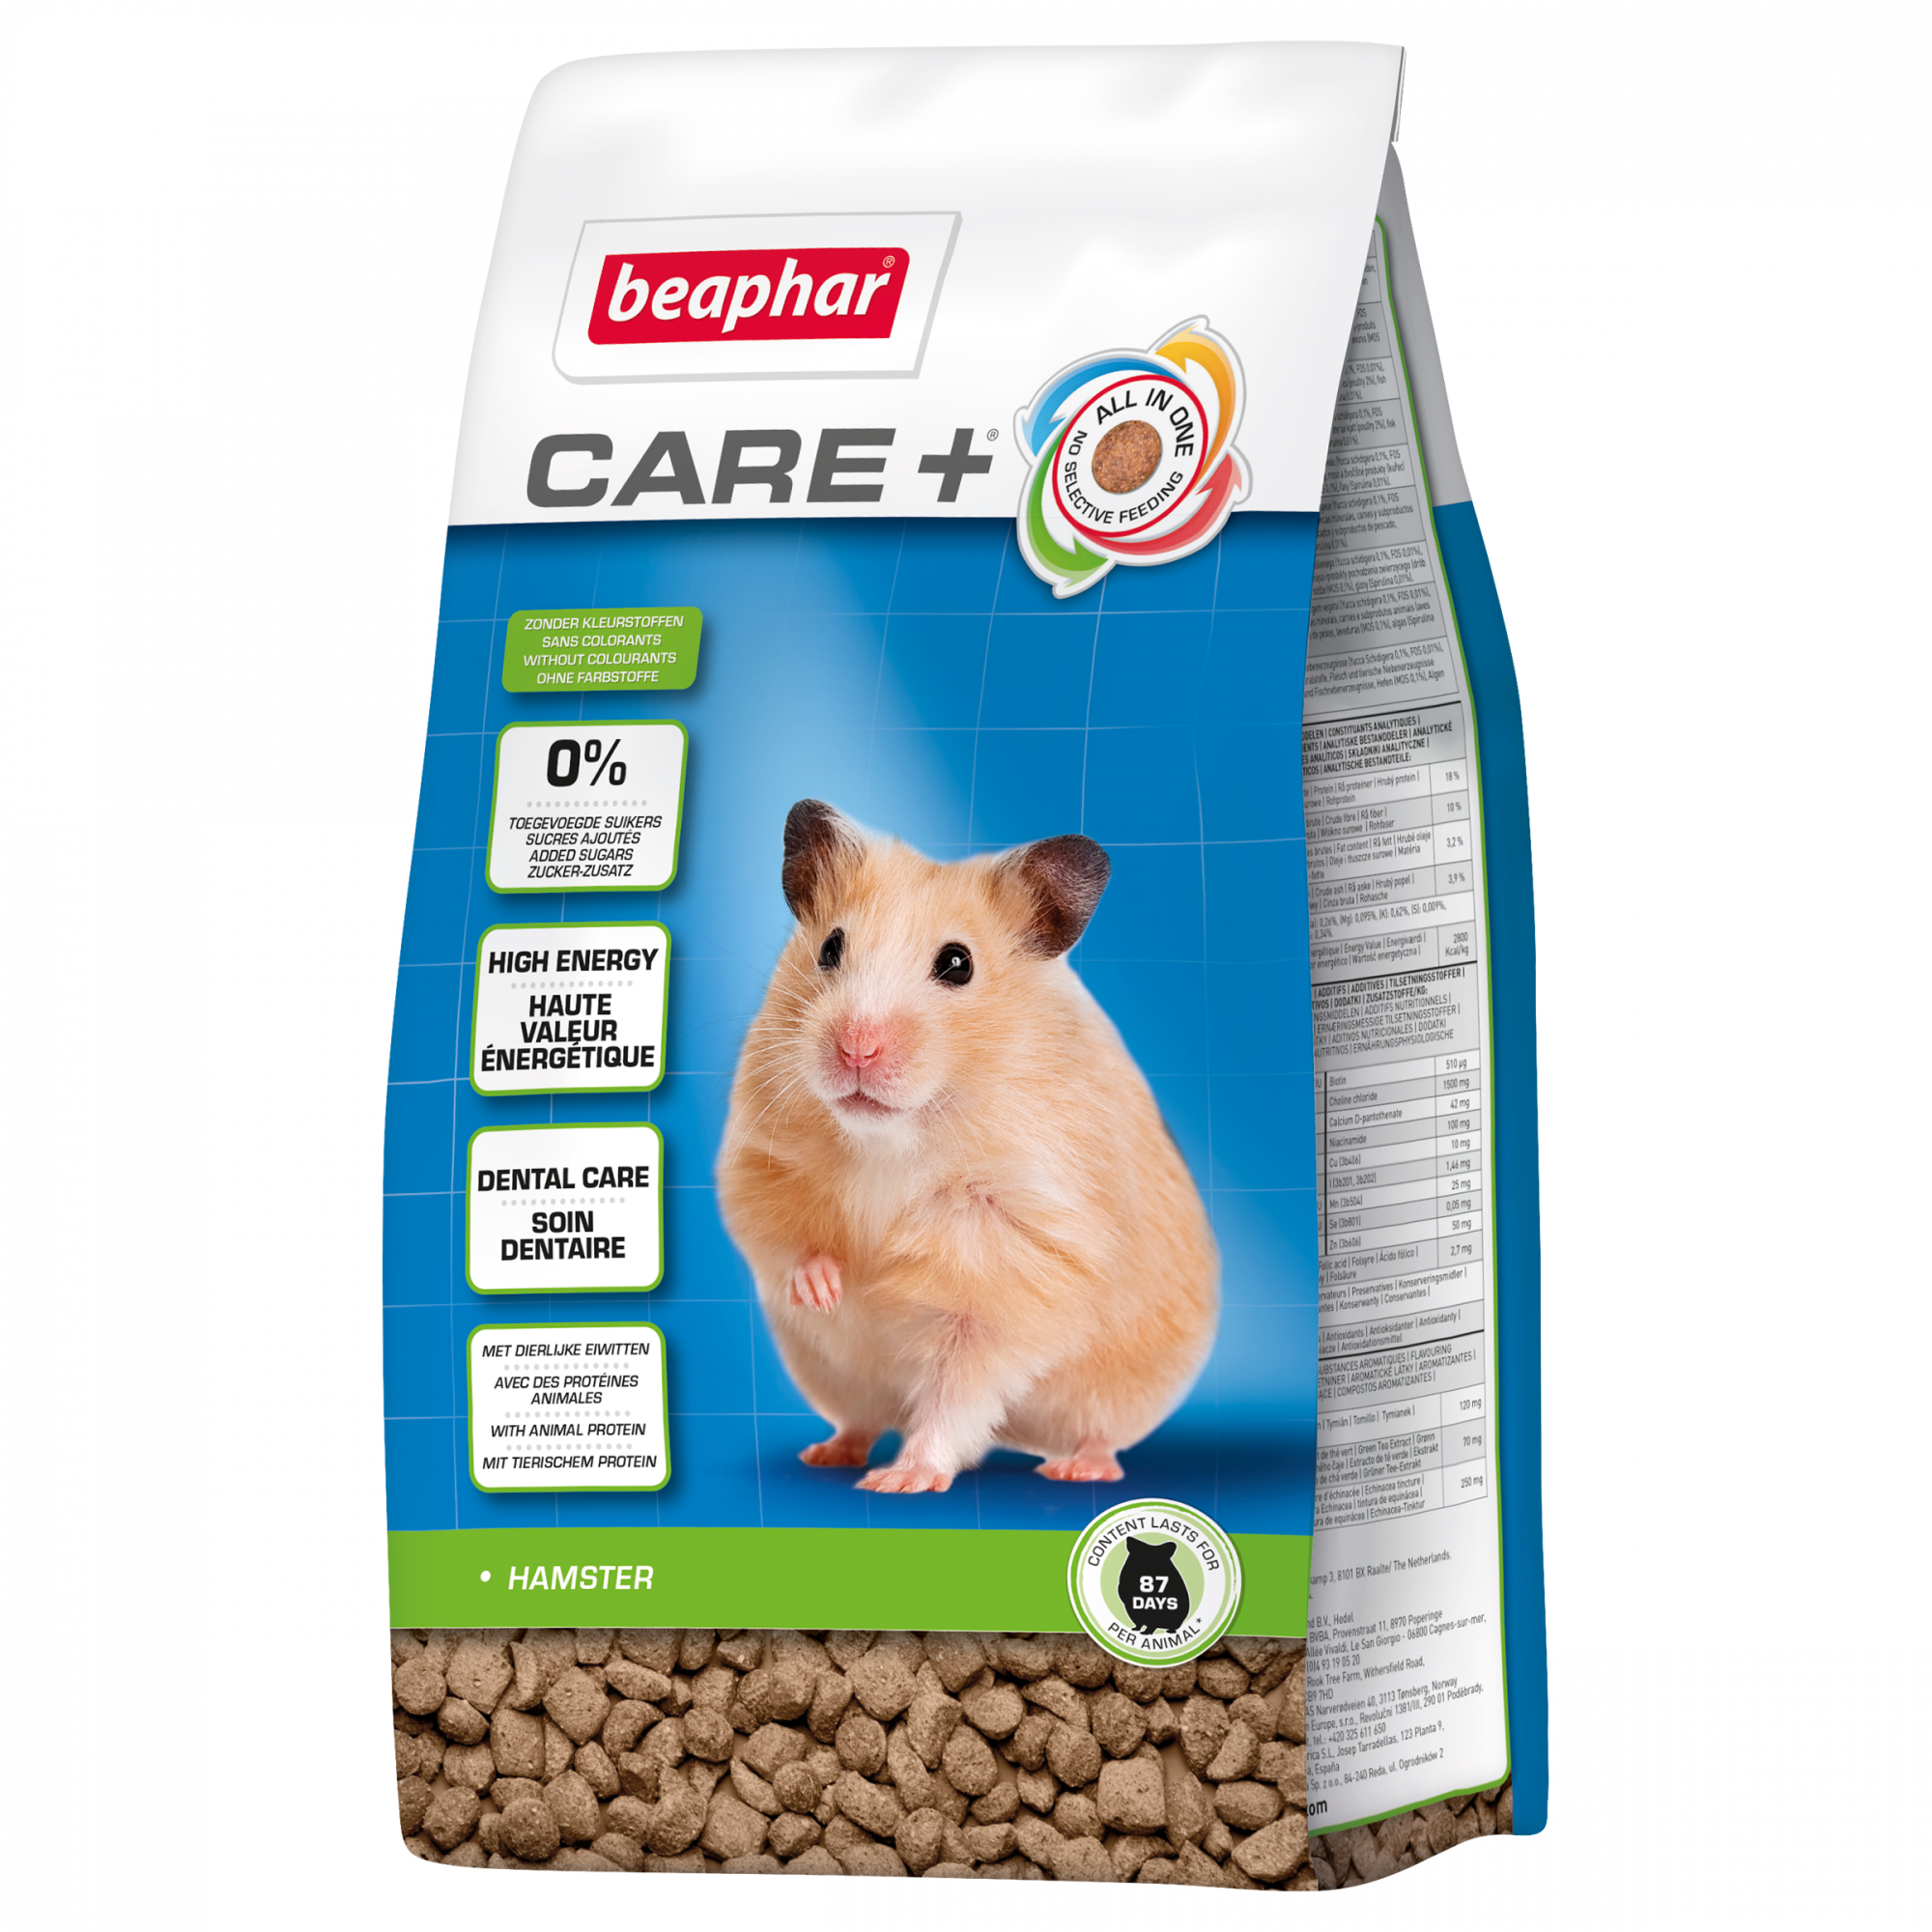 Beaphar Care+ extrudiertes Futter für Hamster